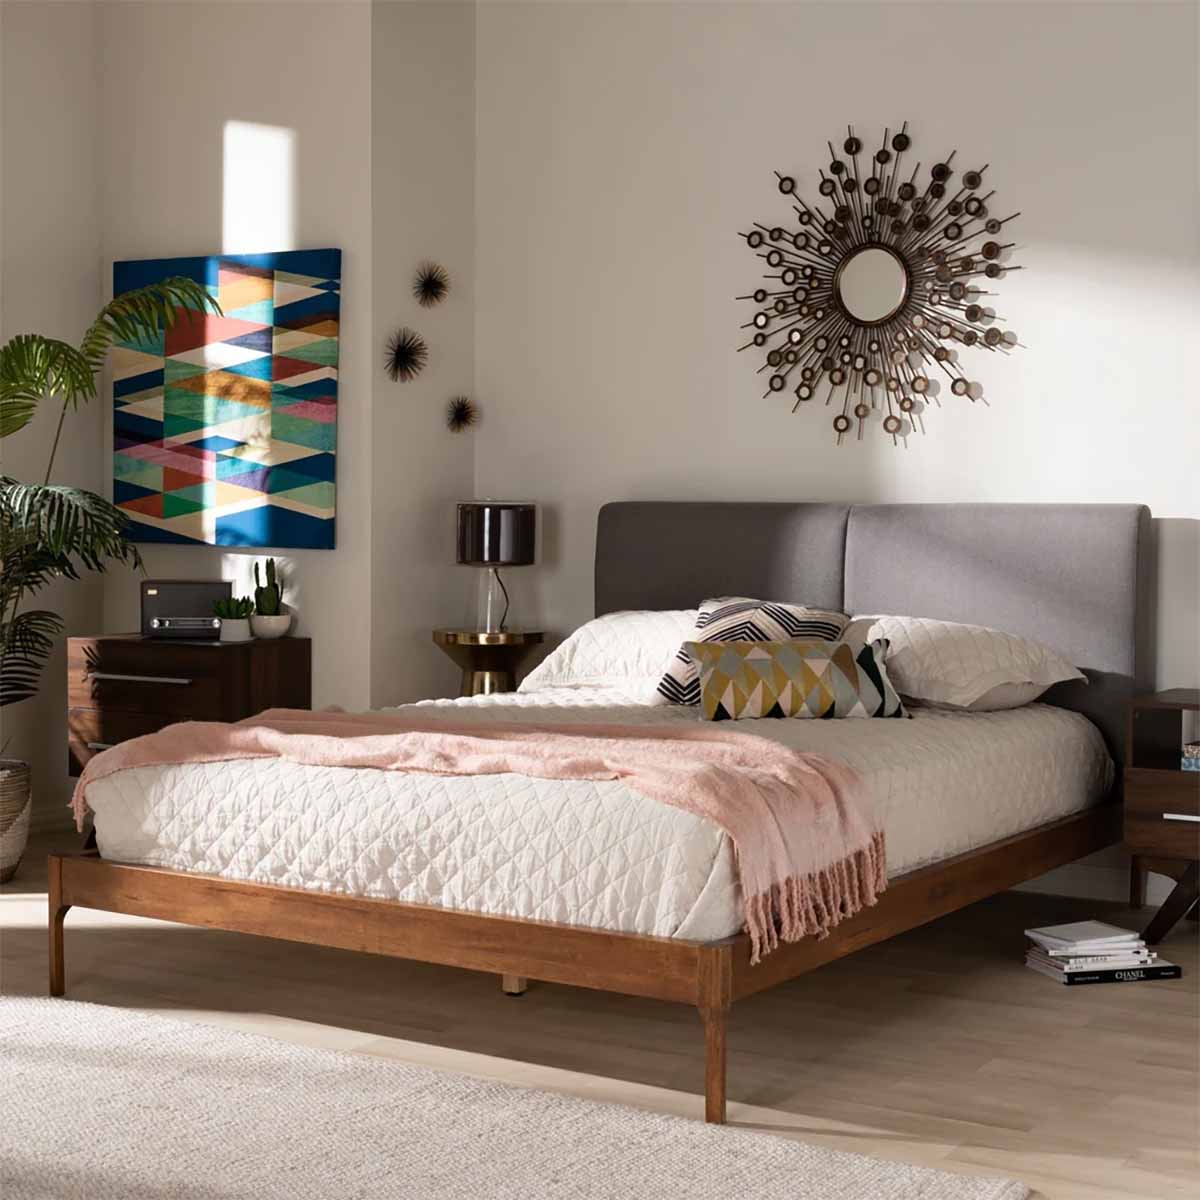 تخت خواب چوبی با تاج پارچه ای به سبک مدرن اواسط قرن 20